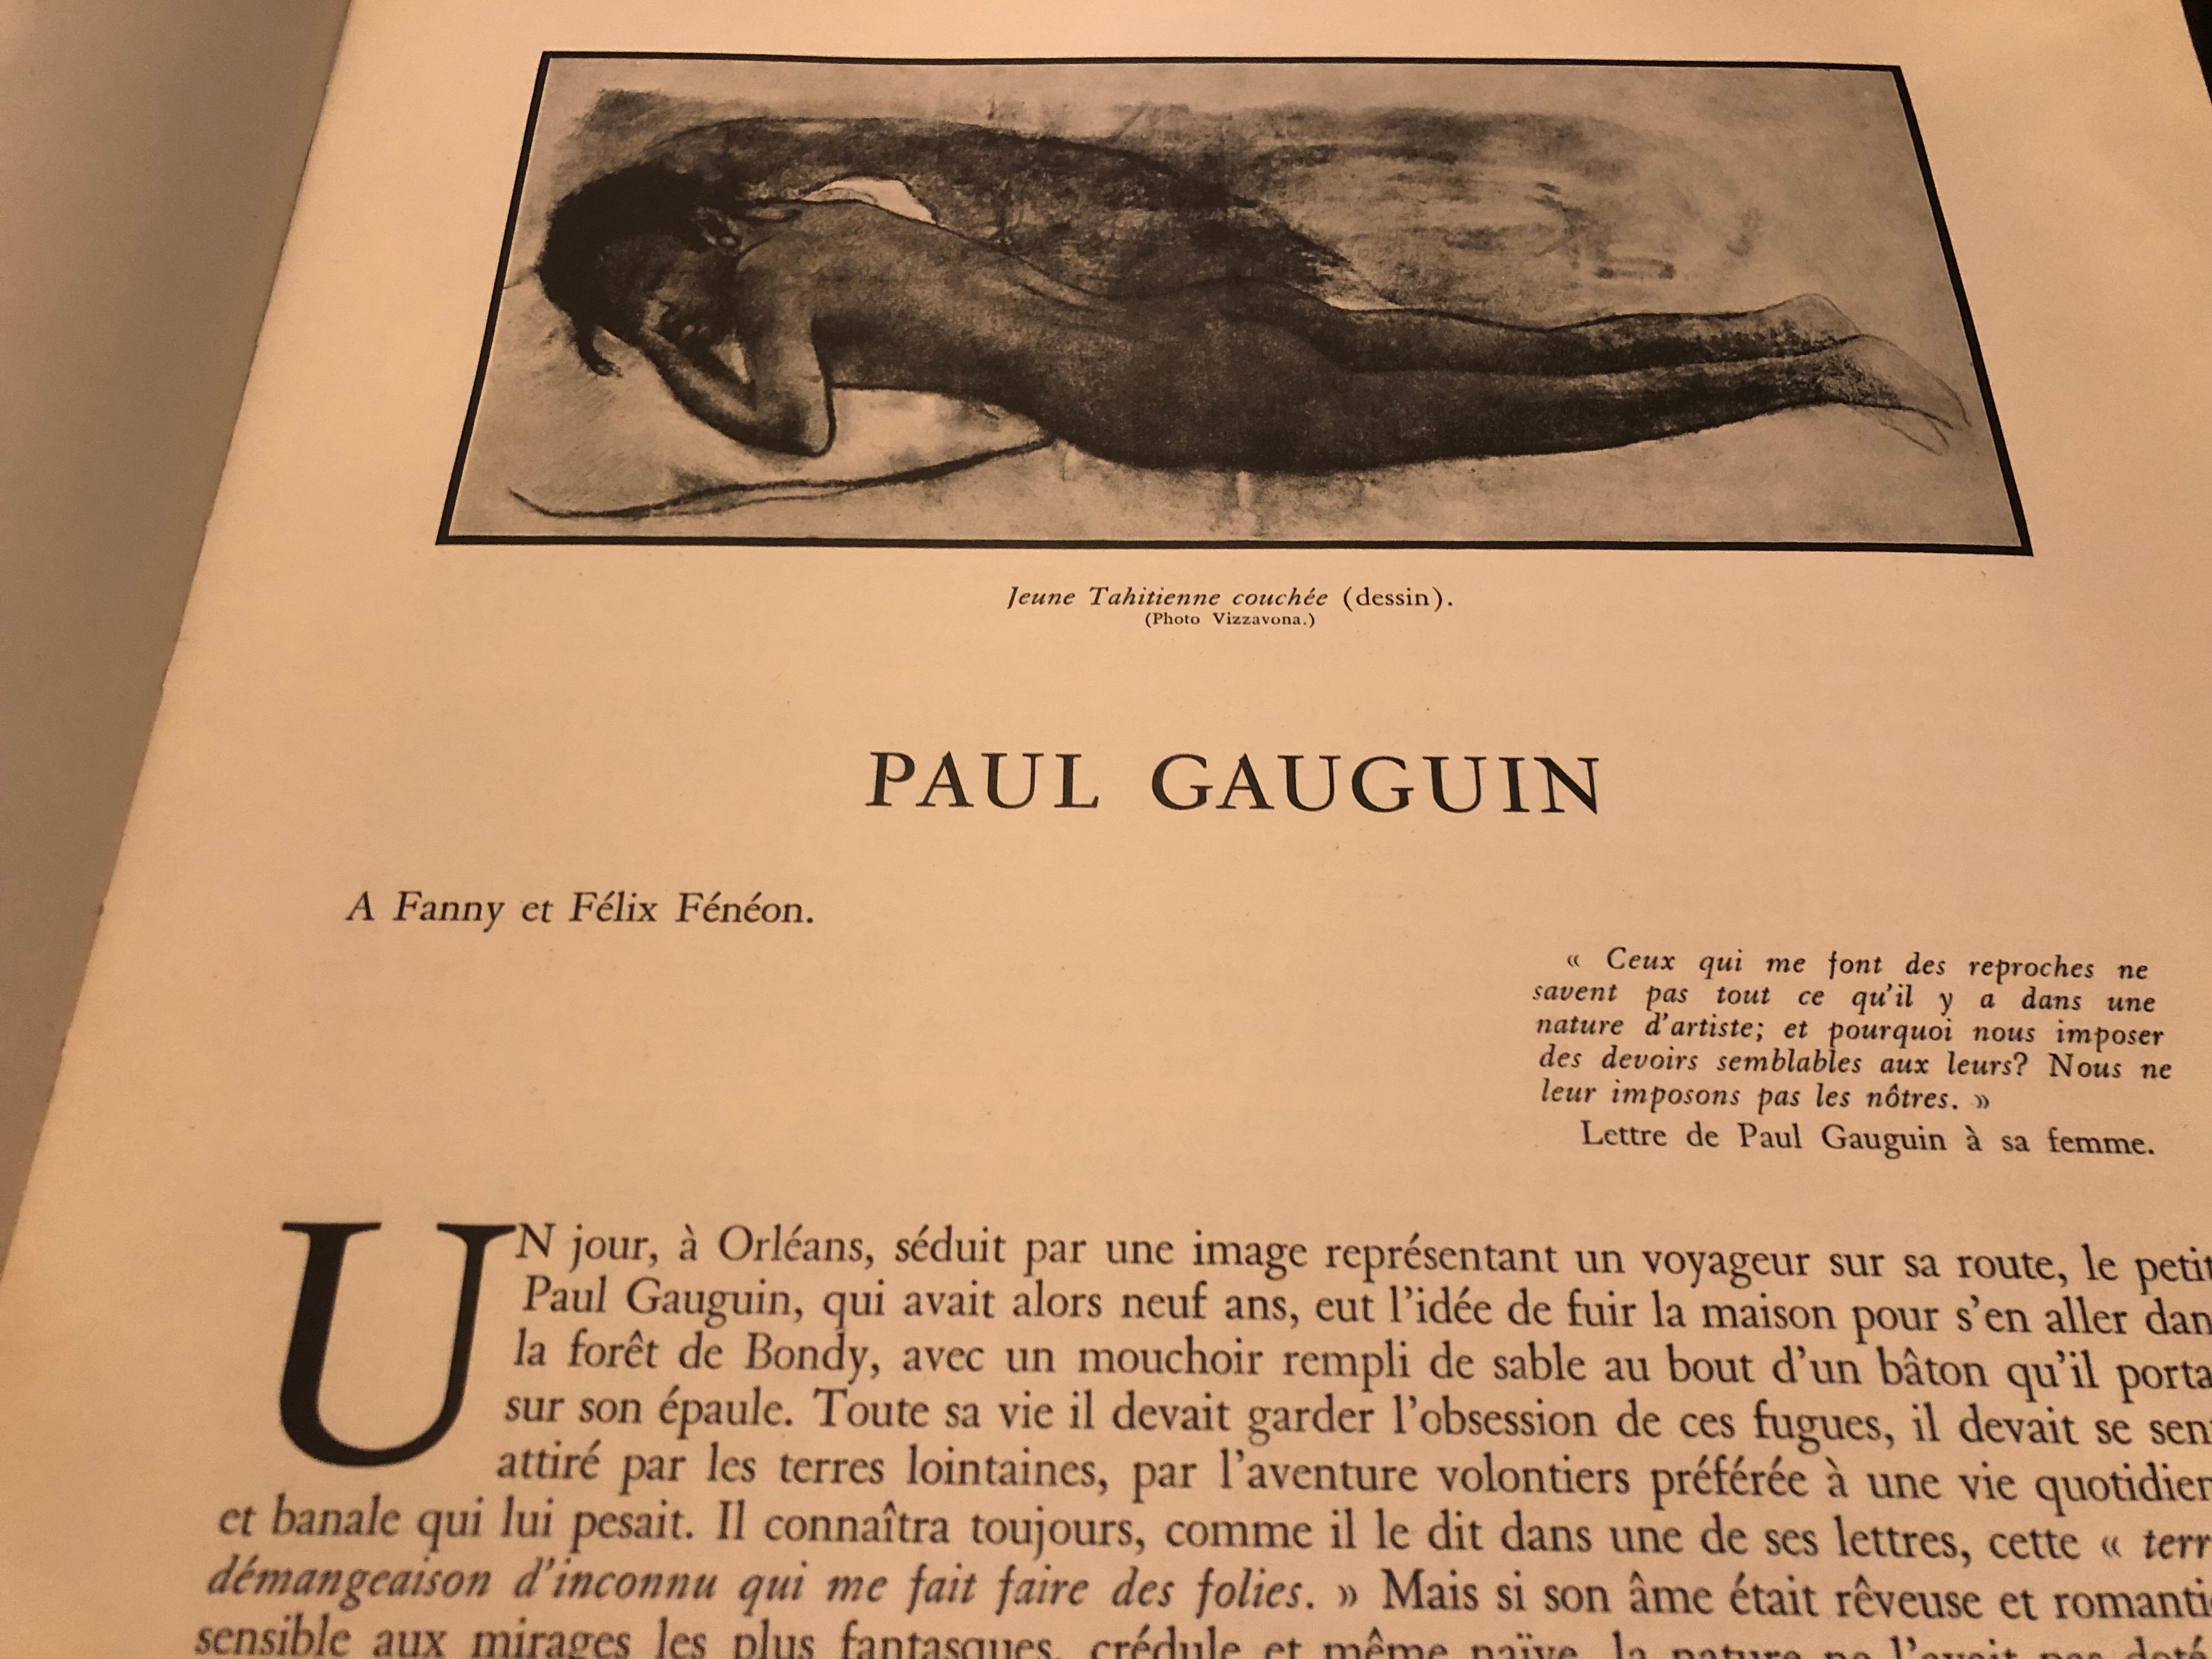 Mid-20th Century Eugène Henri Paul Gauguin by John Rewald, Editions Hyperion, Paris, 1938